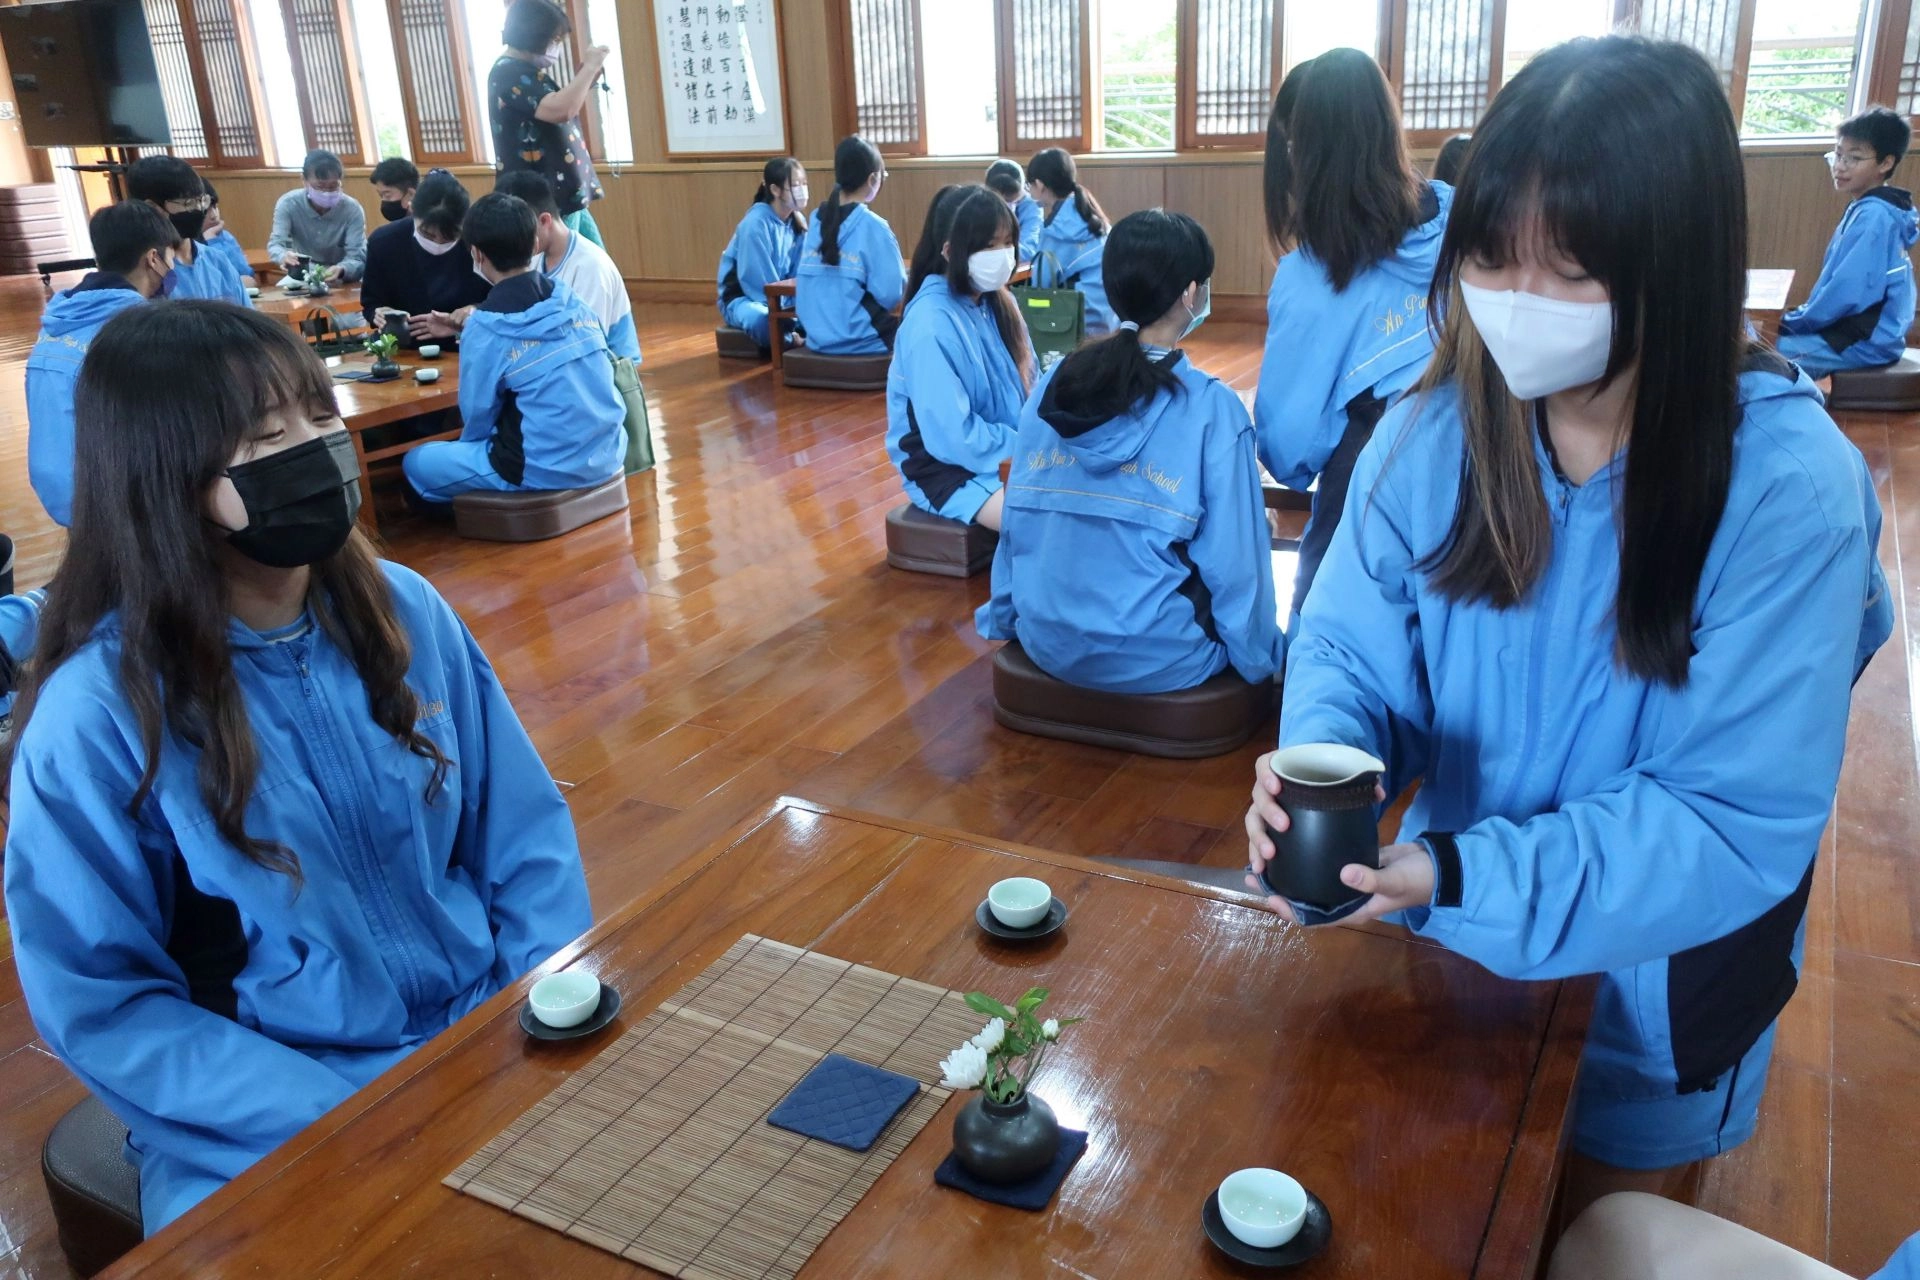 茶道課程讓學生學習待客的禮儀及泡茶的細節。